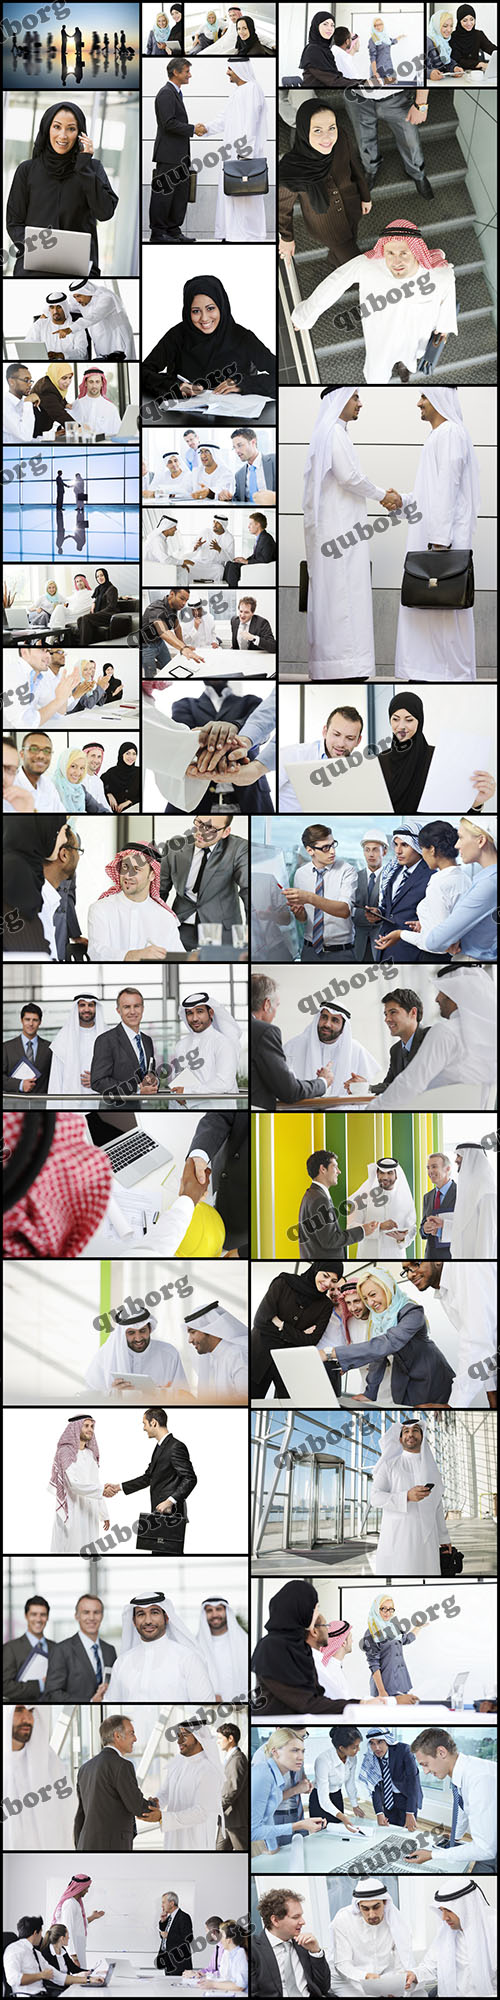 Stock Photos - Arab Business